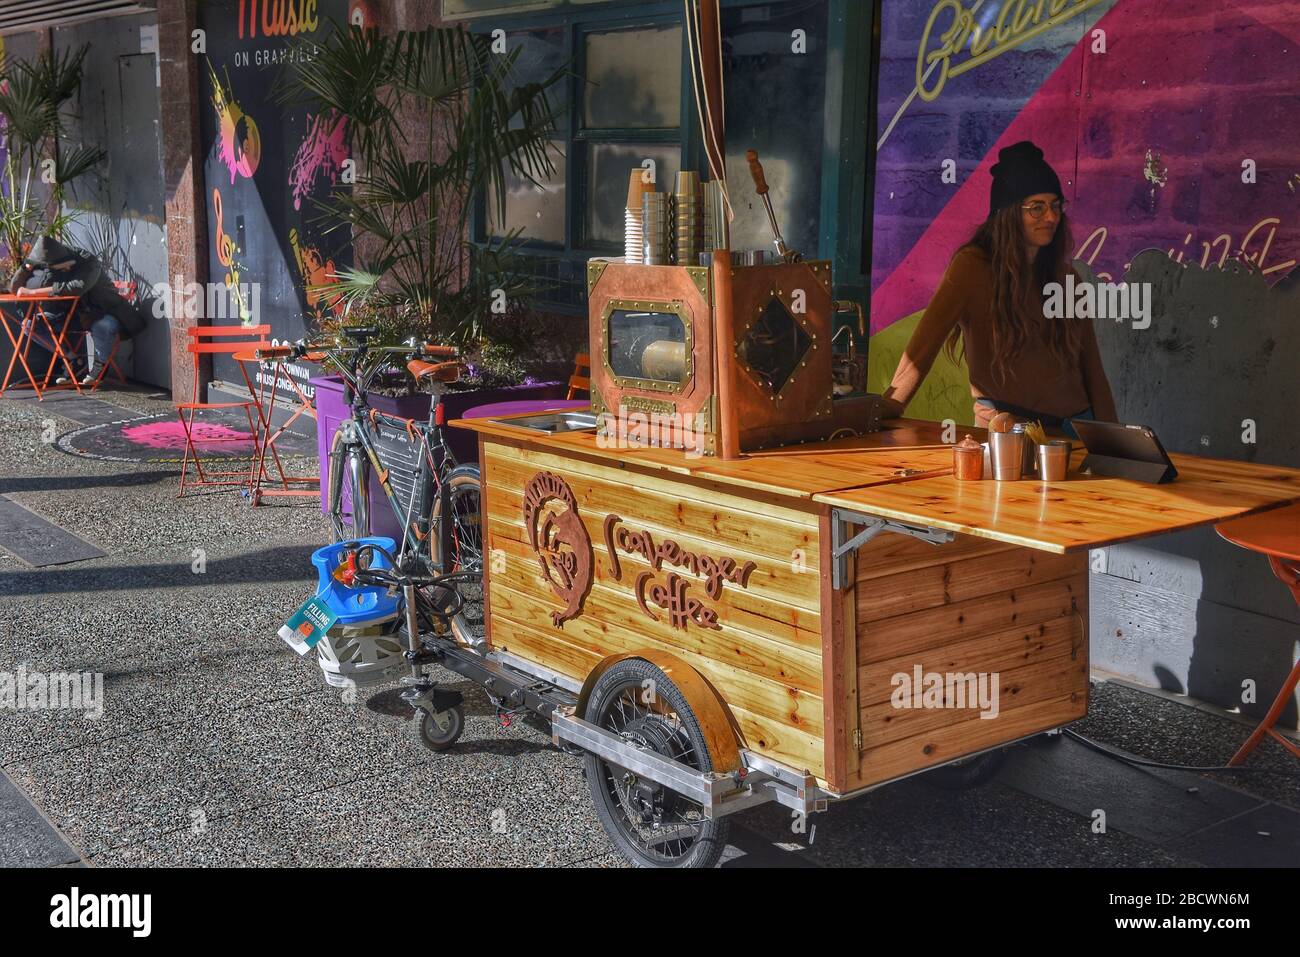 Vancouver, Kanada - 4. März 2020: Diana Lupieri Miteigentümerin des mobilen Wagens mit einer Steampunk-Espressomaschine, die an einem Fahrrad auf Granv befestigt ist Stockfoto